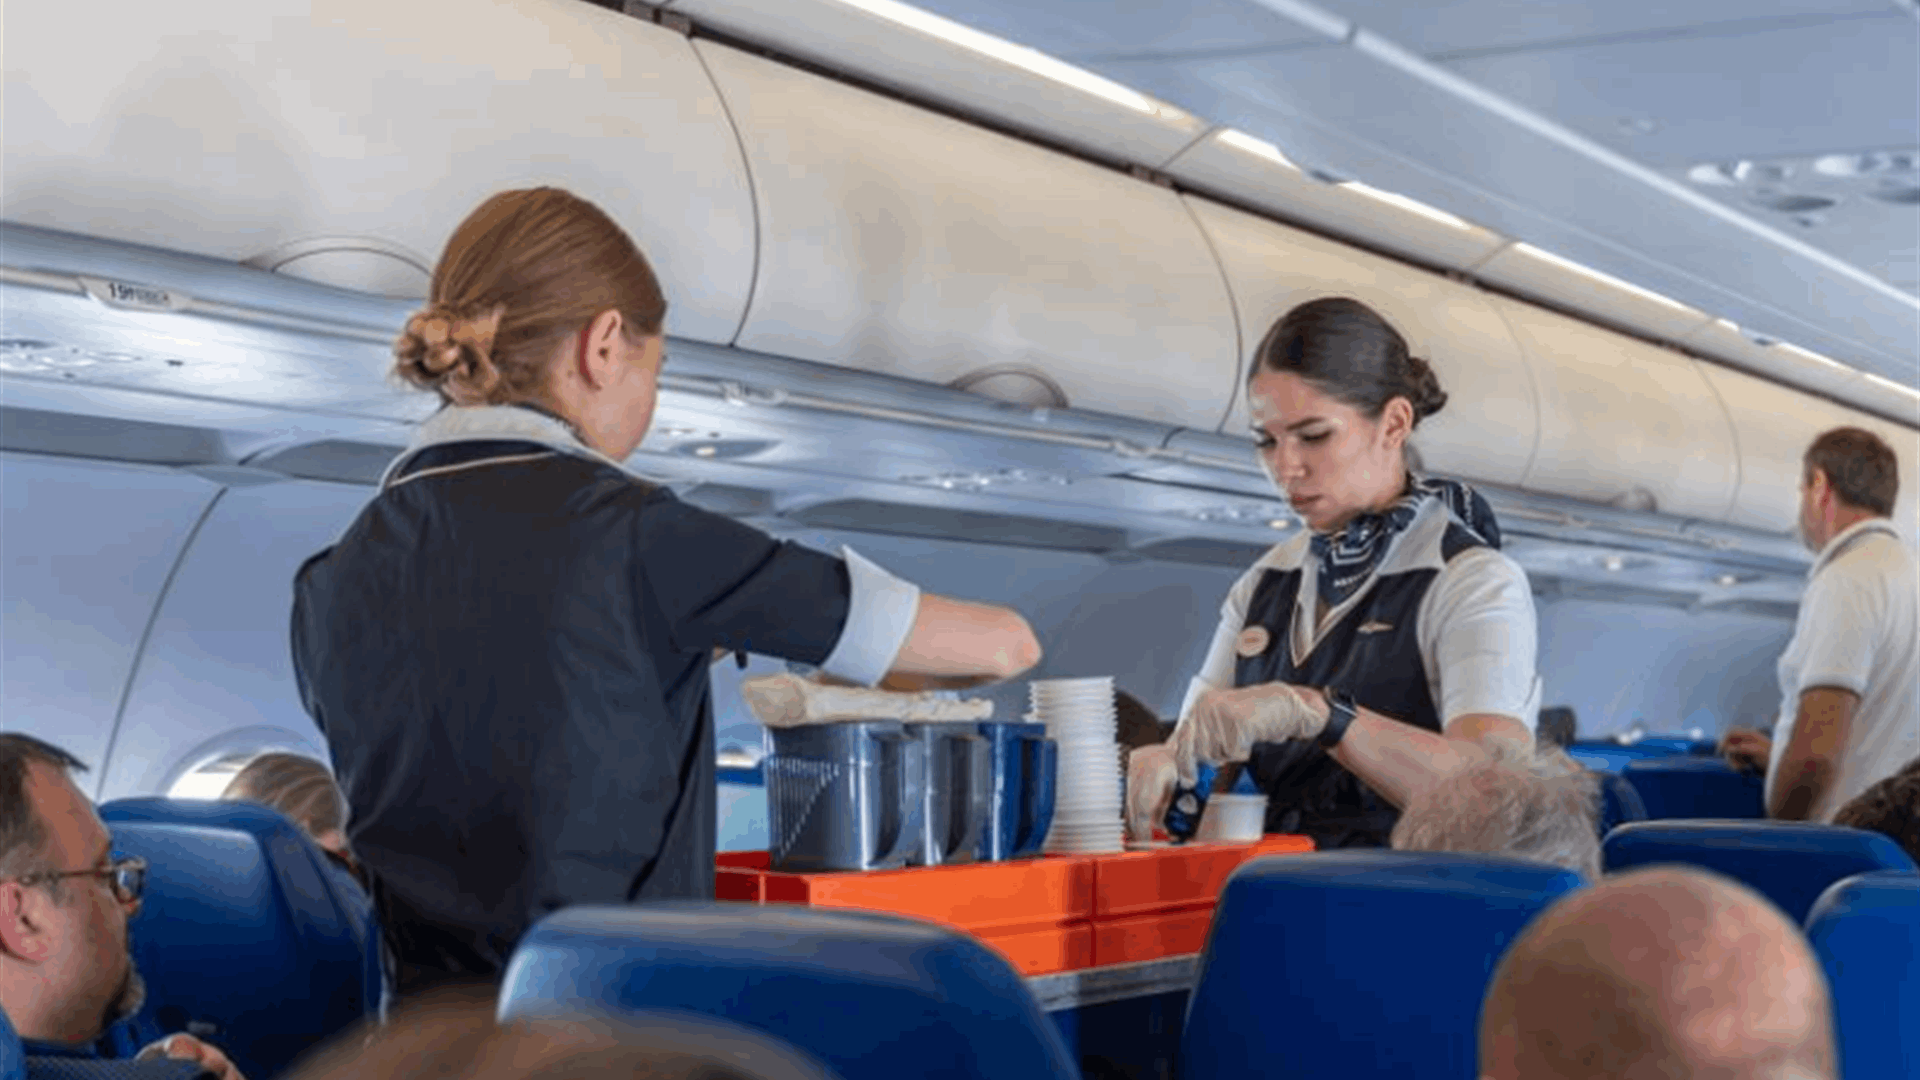 أسرار صغيرة قذرة... مضيف طيران يكشف: لهذا السبب لا تشربوا القهوة على متن الطائرة!